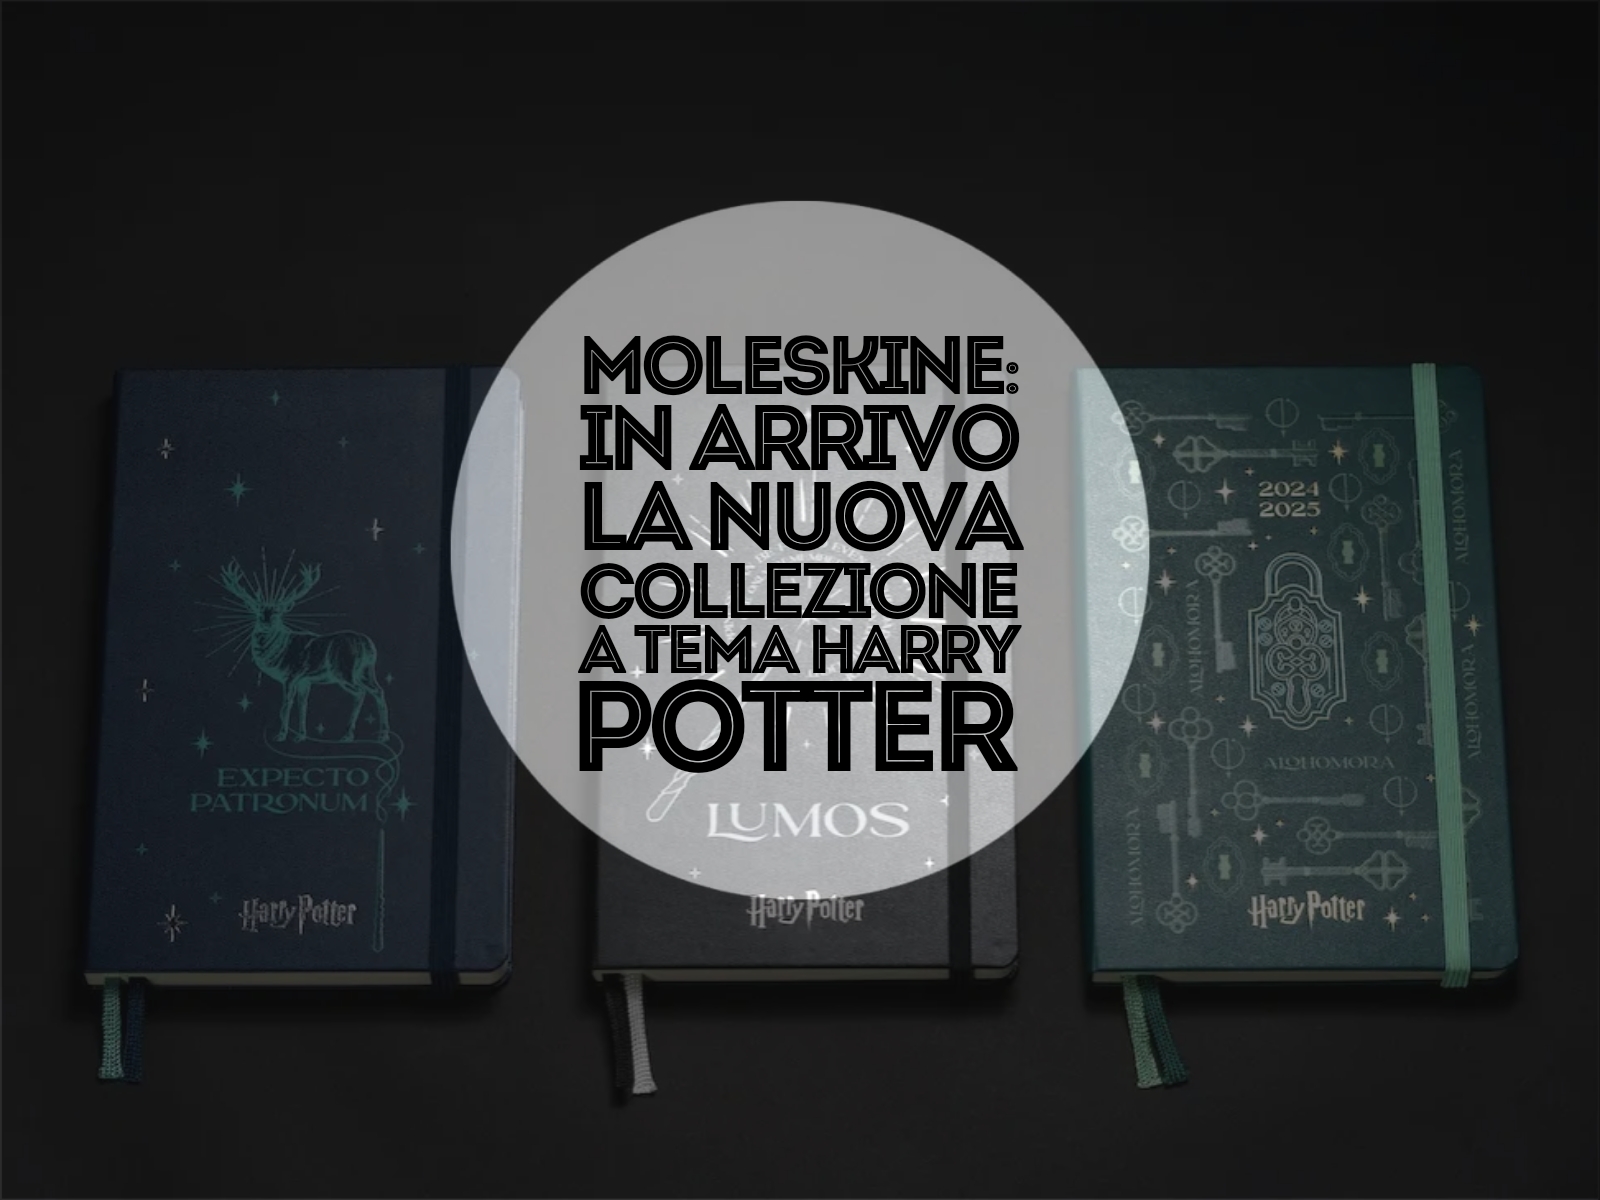 Moleskine: in arrivo la nuova collezione a tema Harry Potter